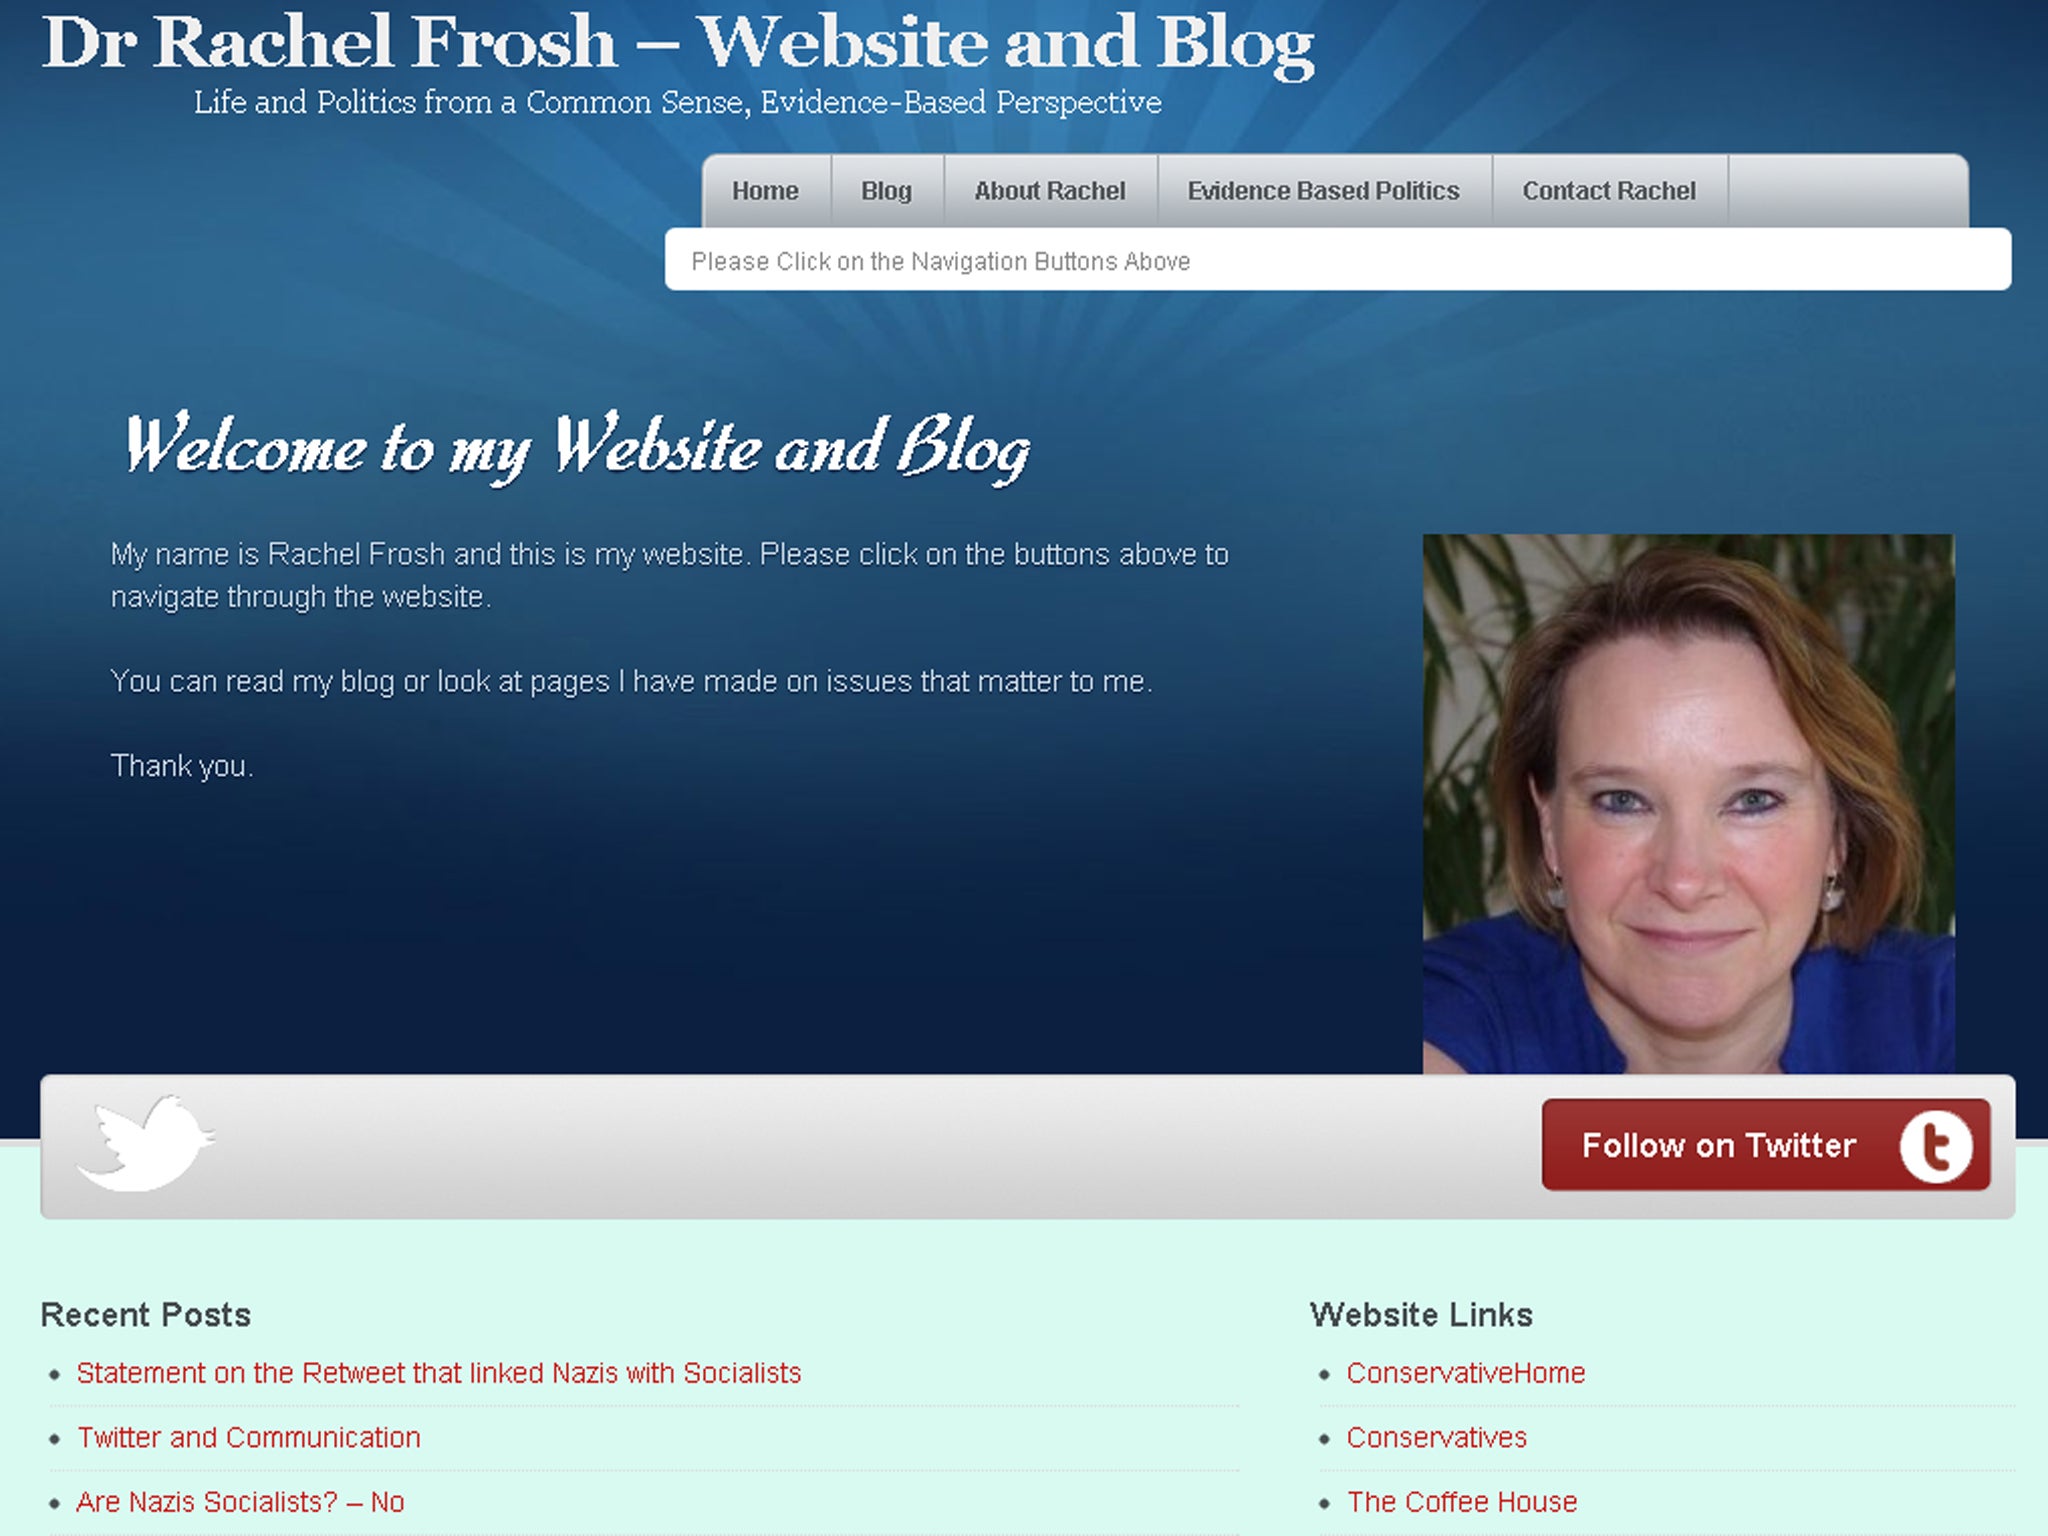 Dr Rachel Frosh's website